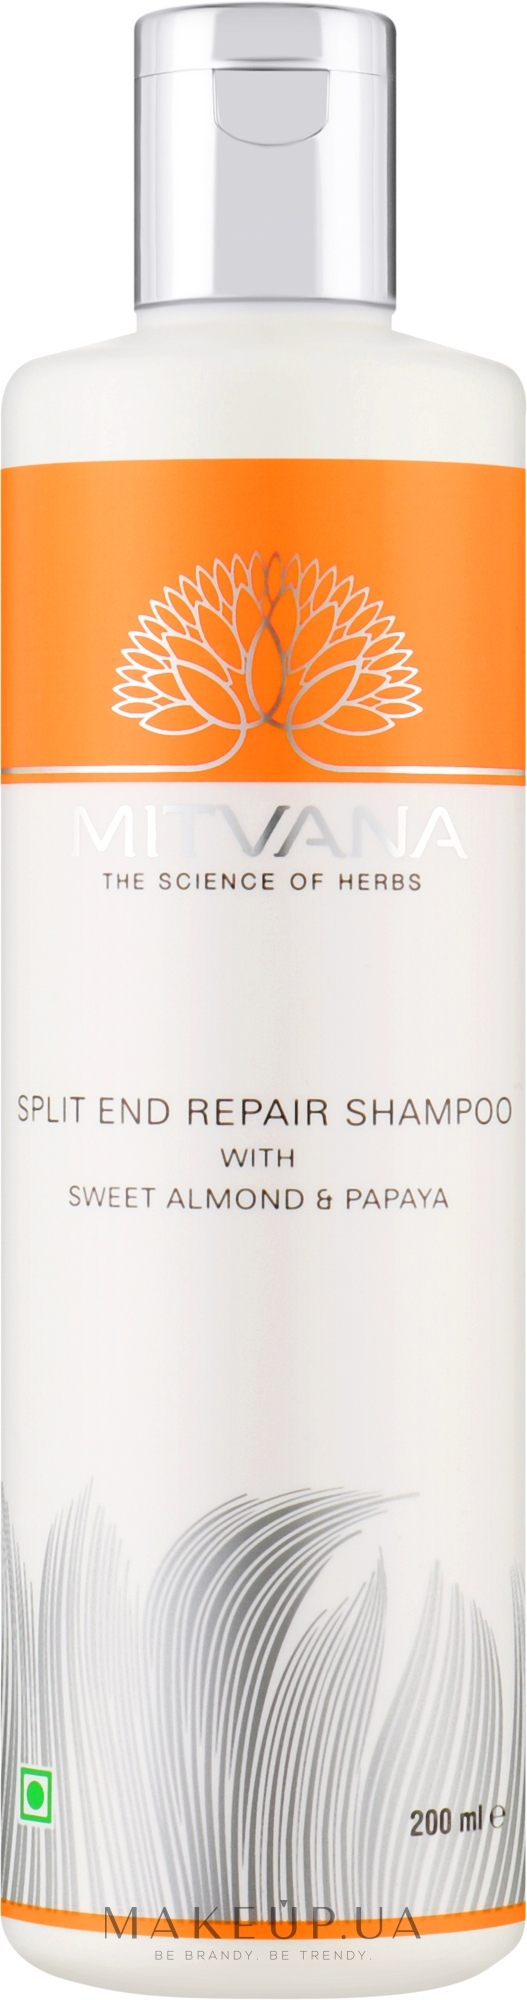 Шампунь для восстановления секущихся кончиков волос со сладким миндалем и папайей - Mitvana Split End Repair Shampoo — фото 200ml